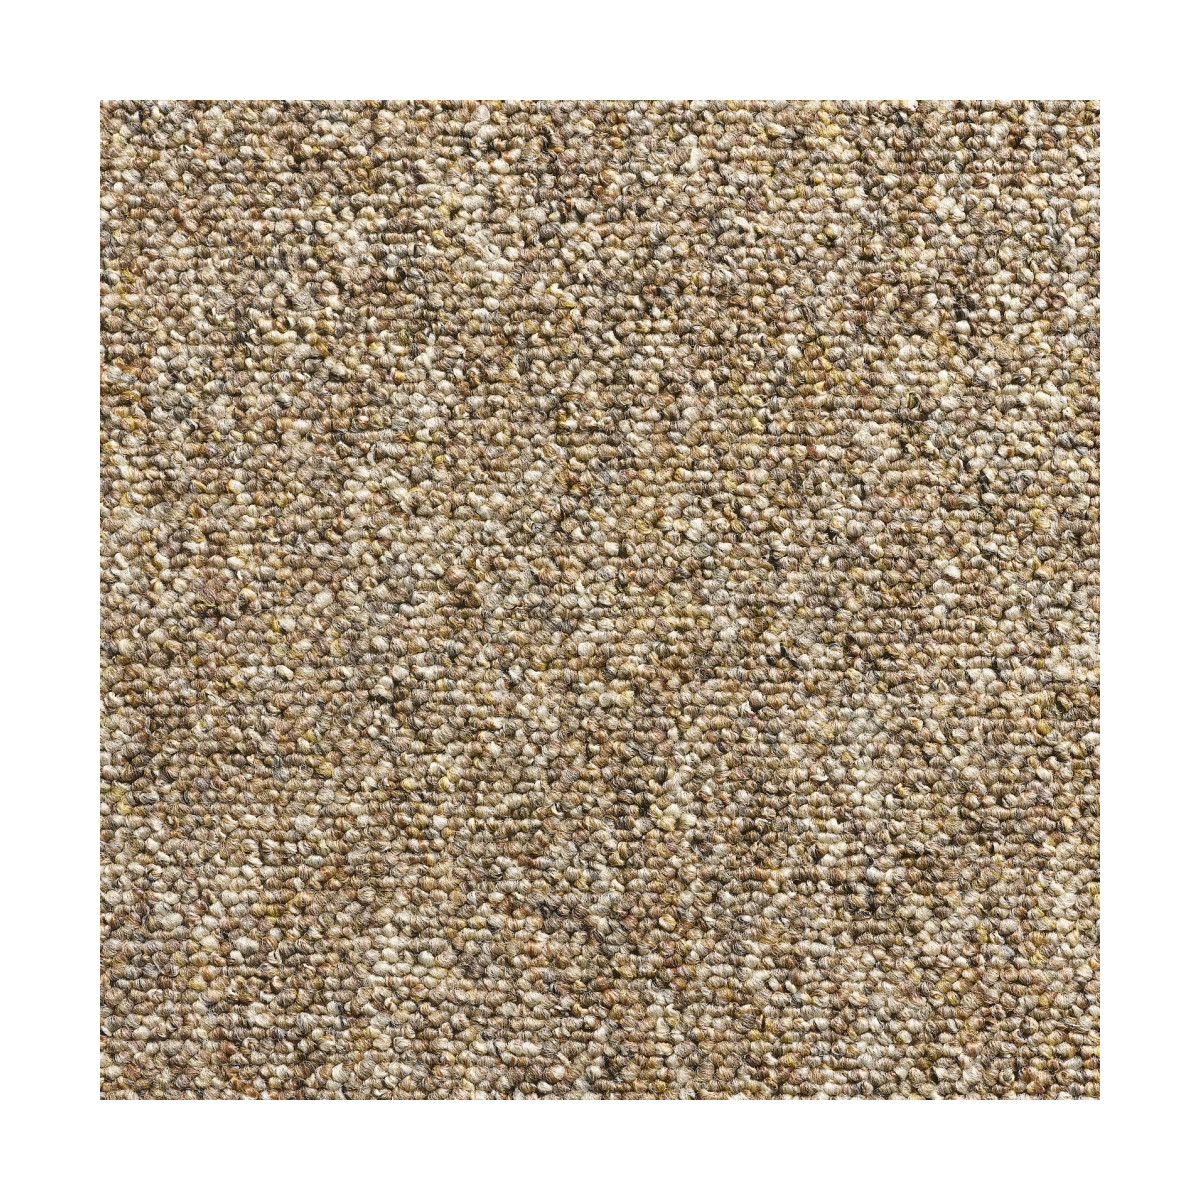 Metrážový koberec Malmo 2517